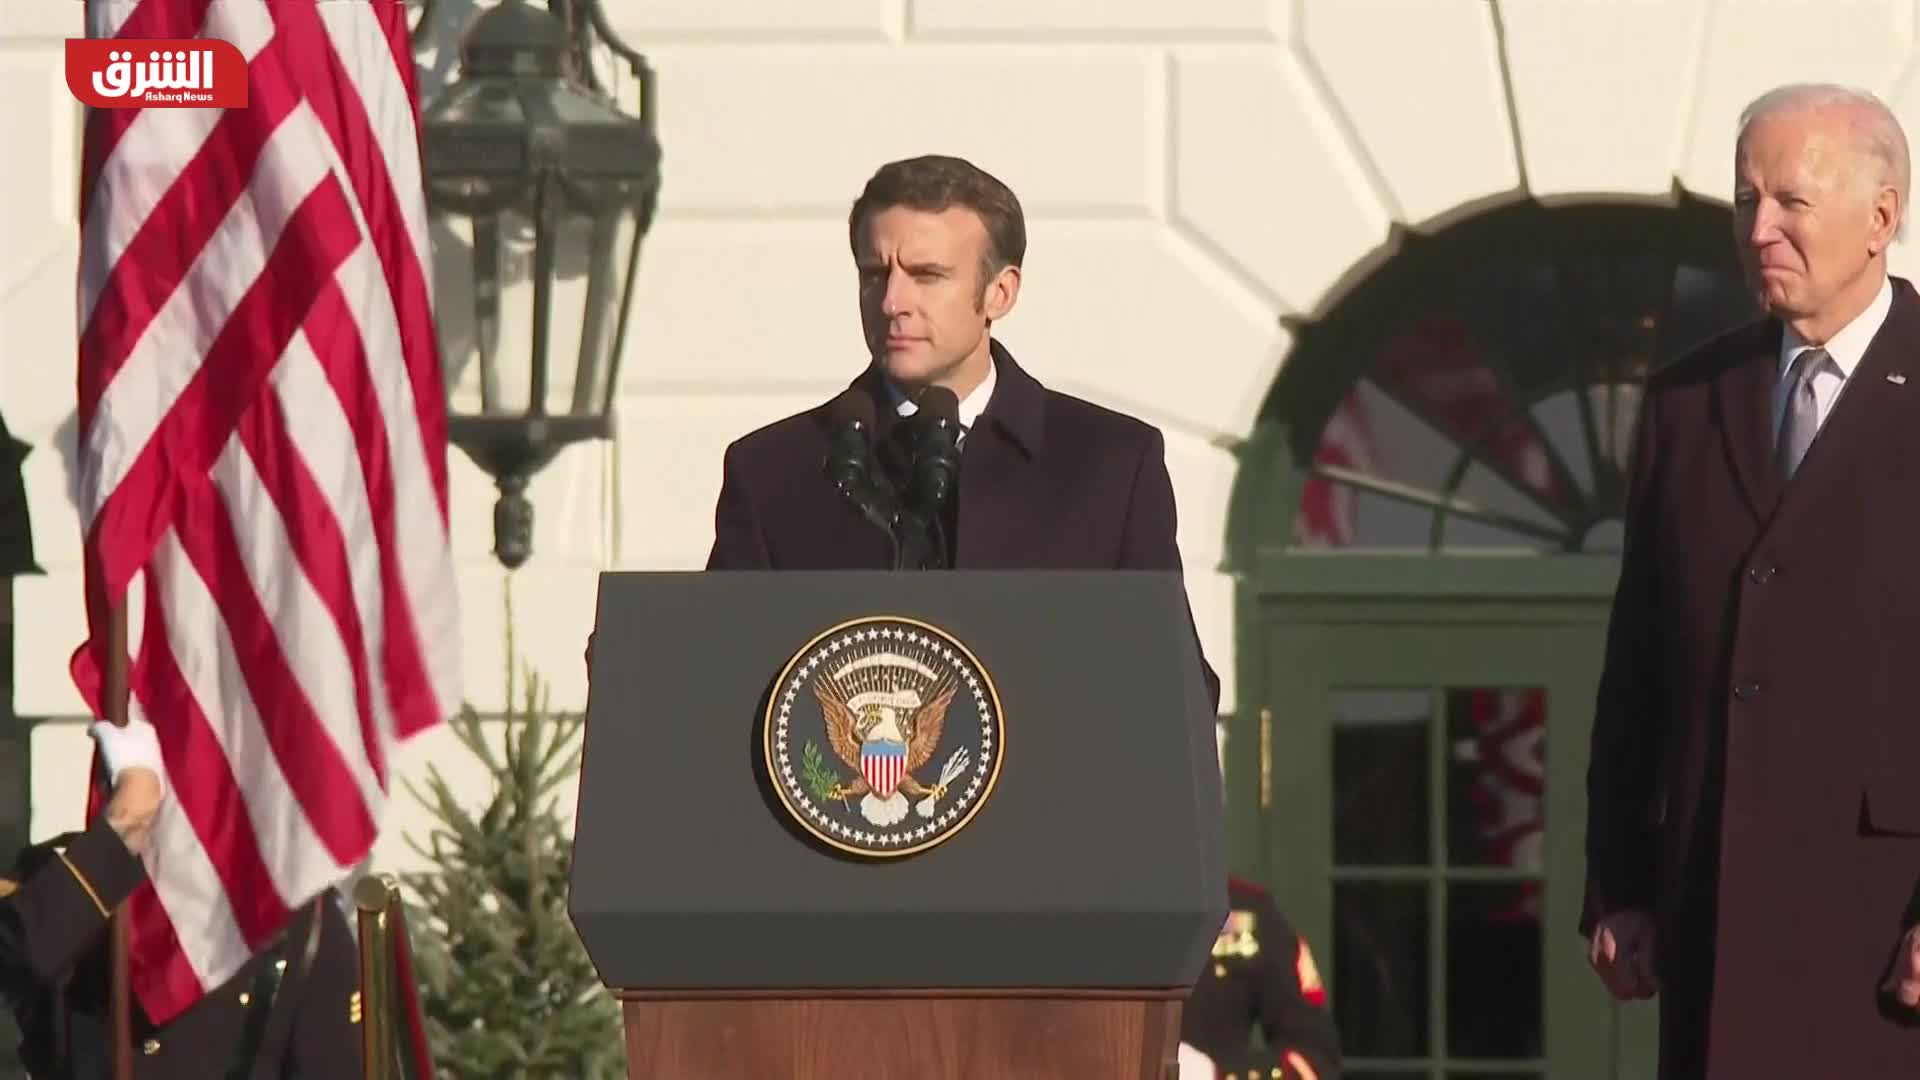 مراسم استقبال رسمية للرئيس الفرنسي في البيت الأبيض